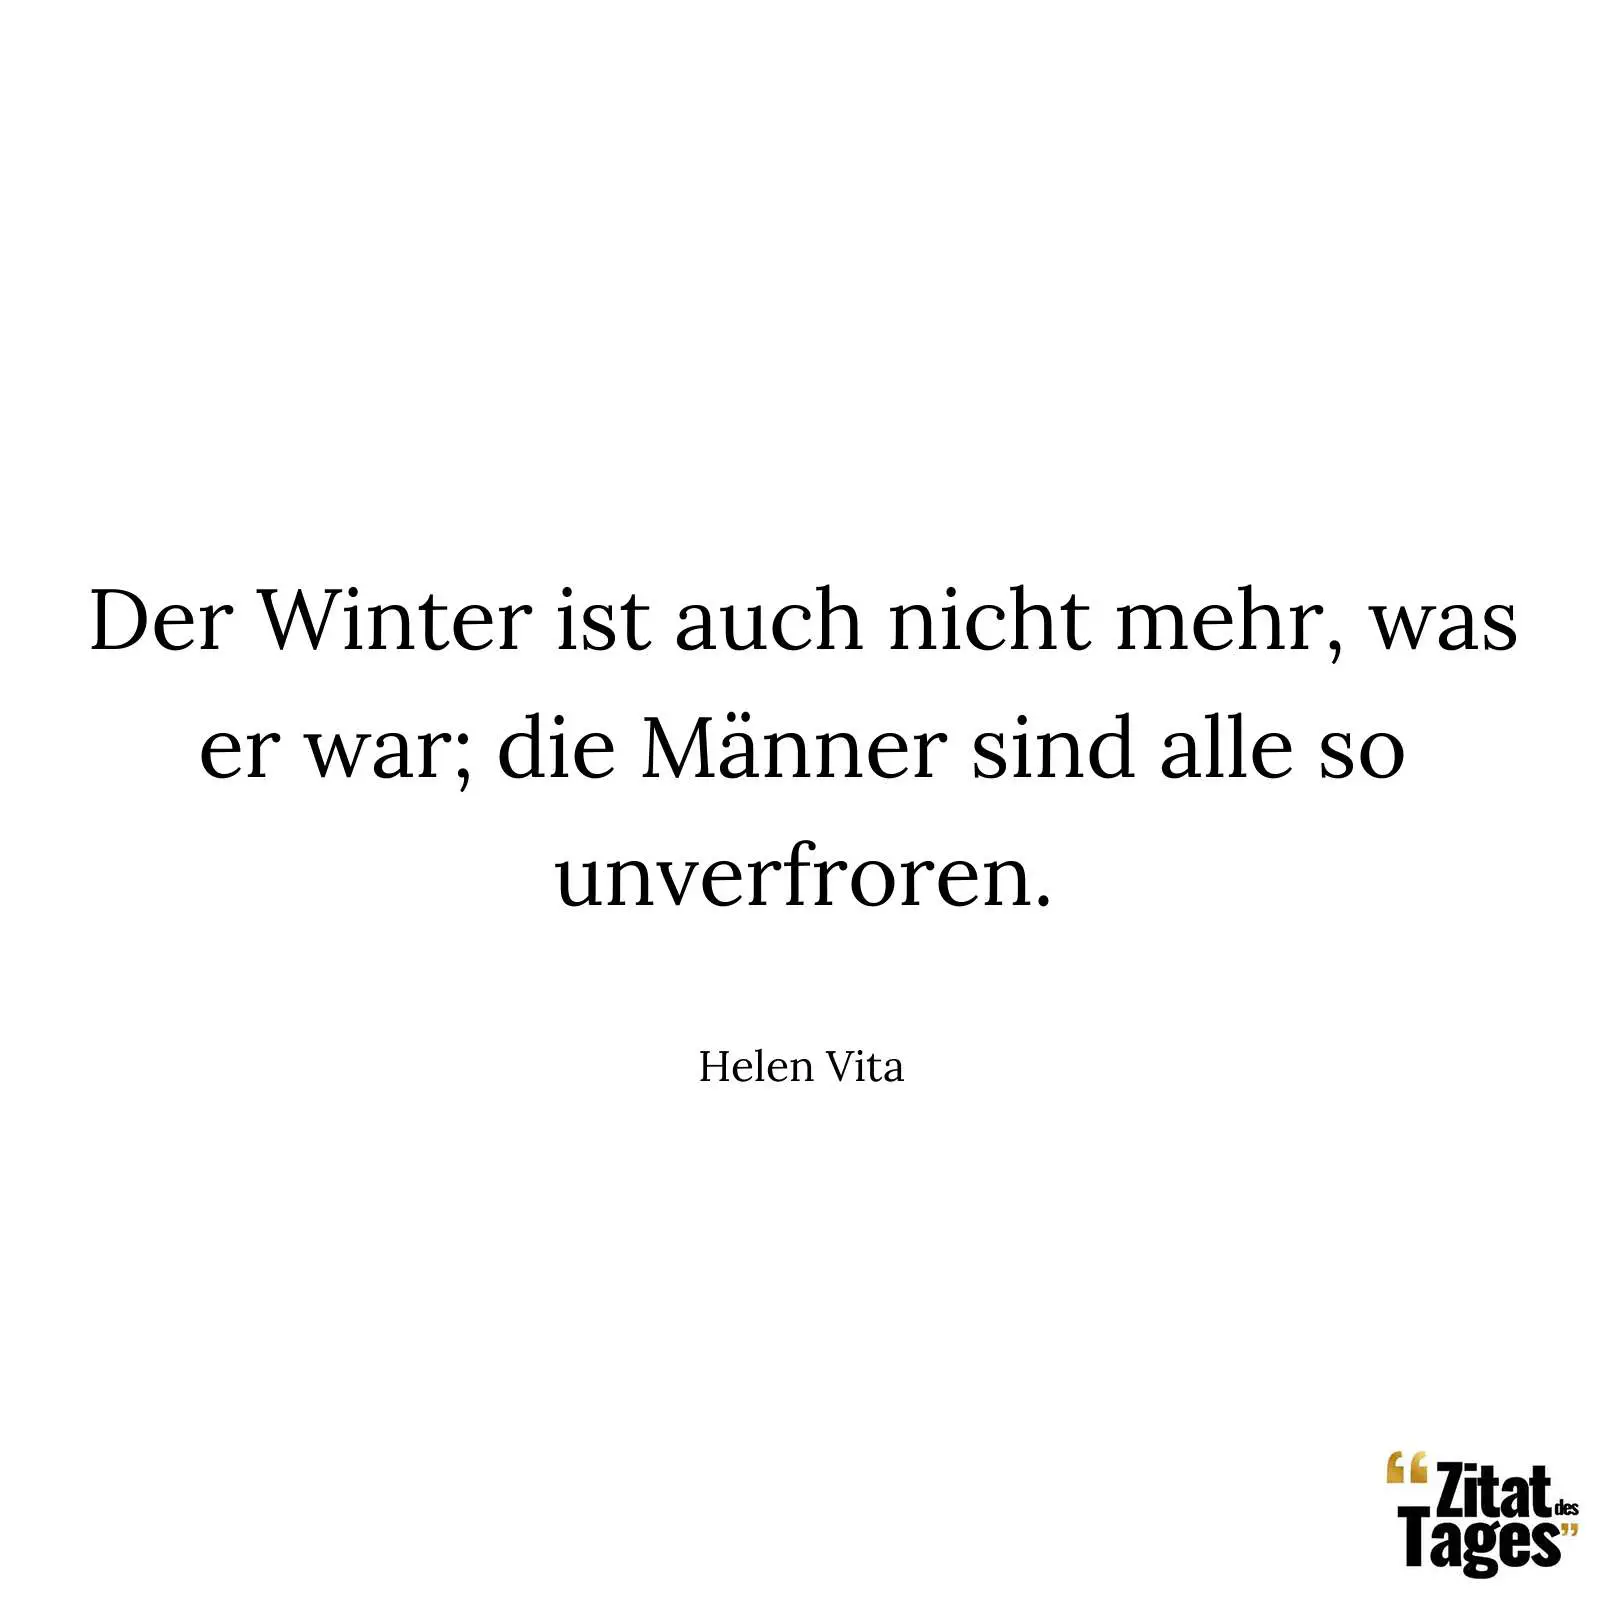 Der Winter ist auch nicht mehr, was er war; die Männer sind alle so unverfroren. - Helen Vita